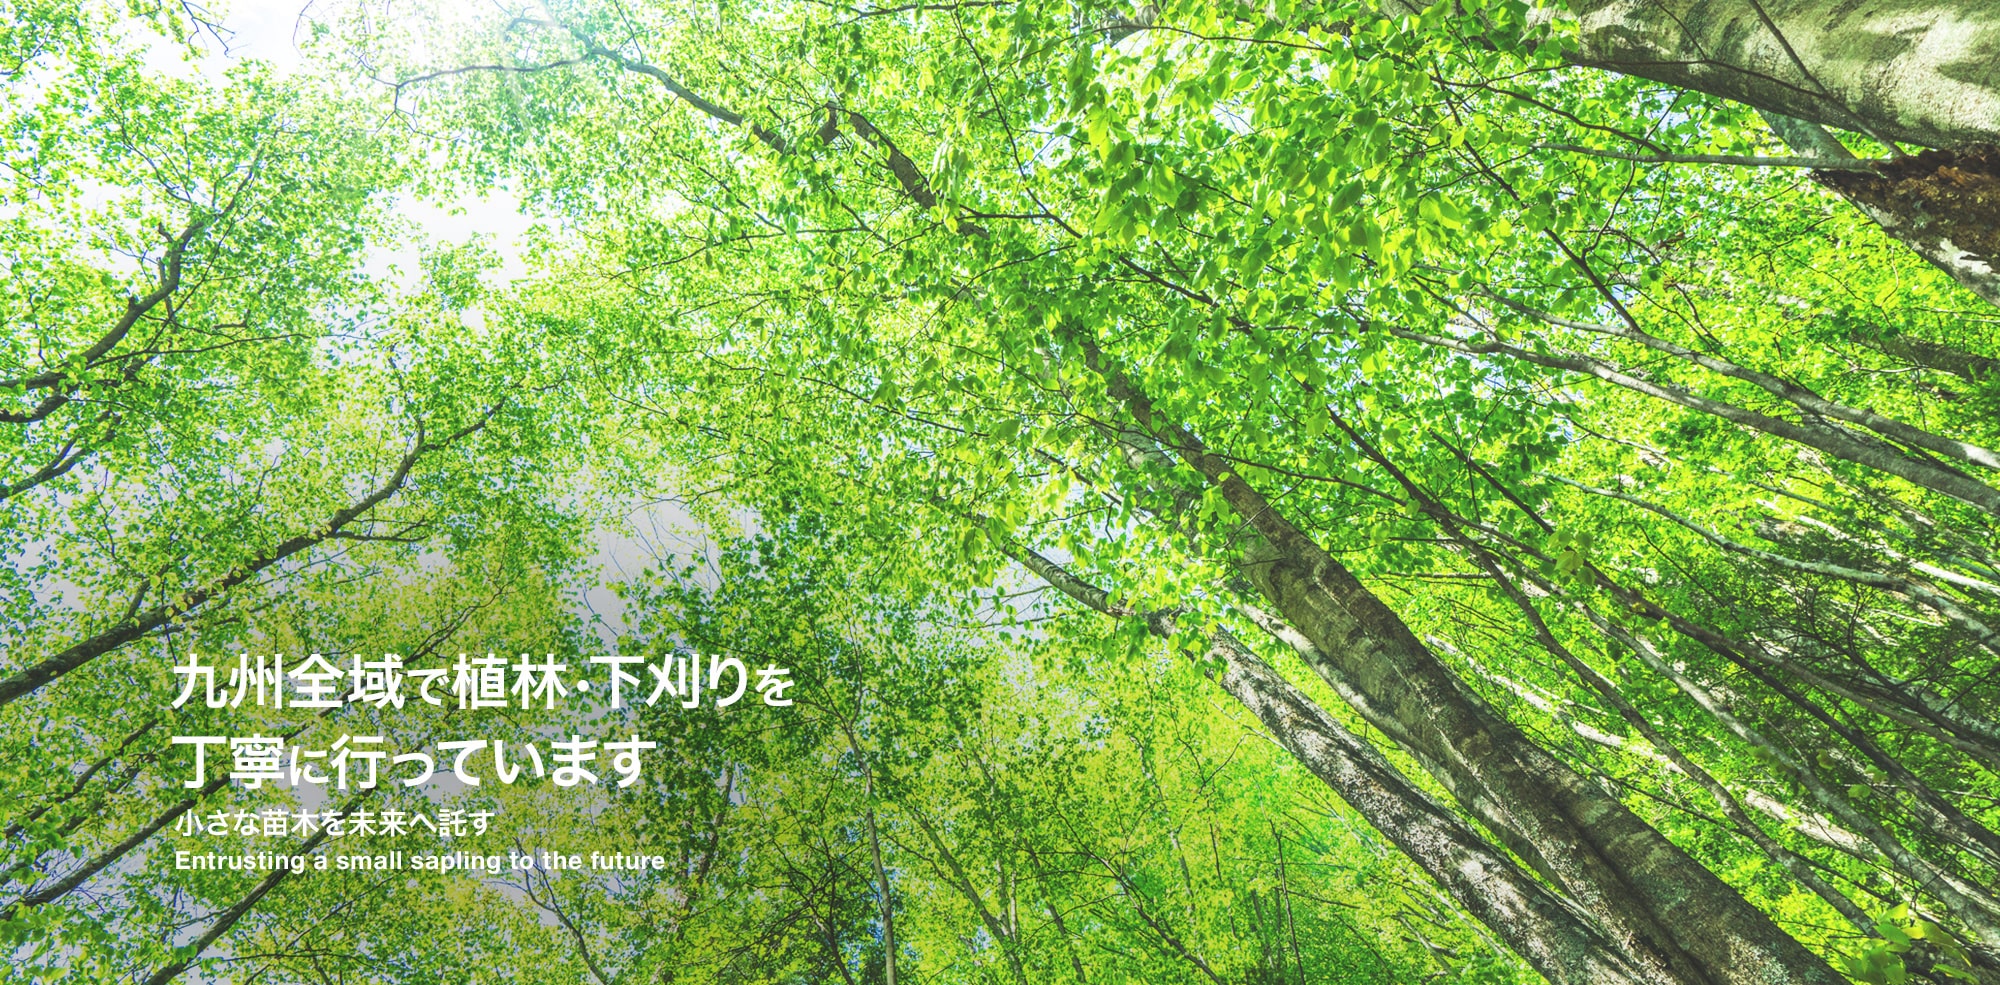 九州全域で、植林・下刈りを丁寧に行っています。～小さな苗木を未来へ託す～ 